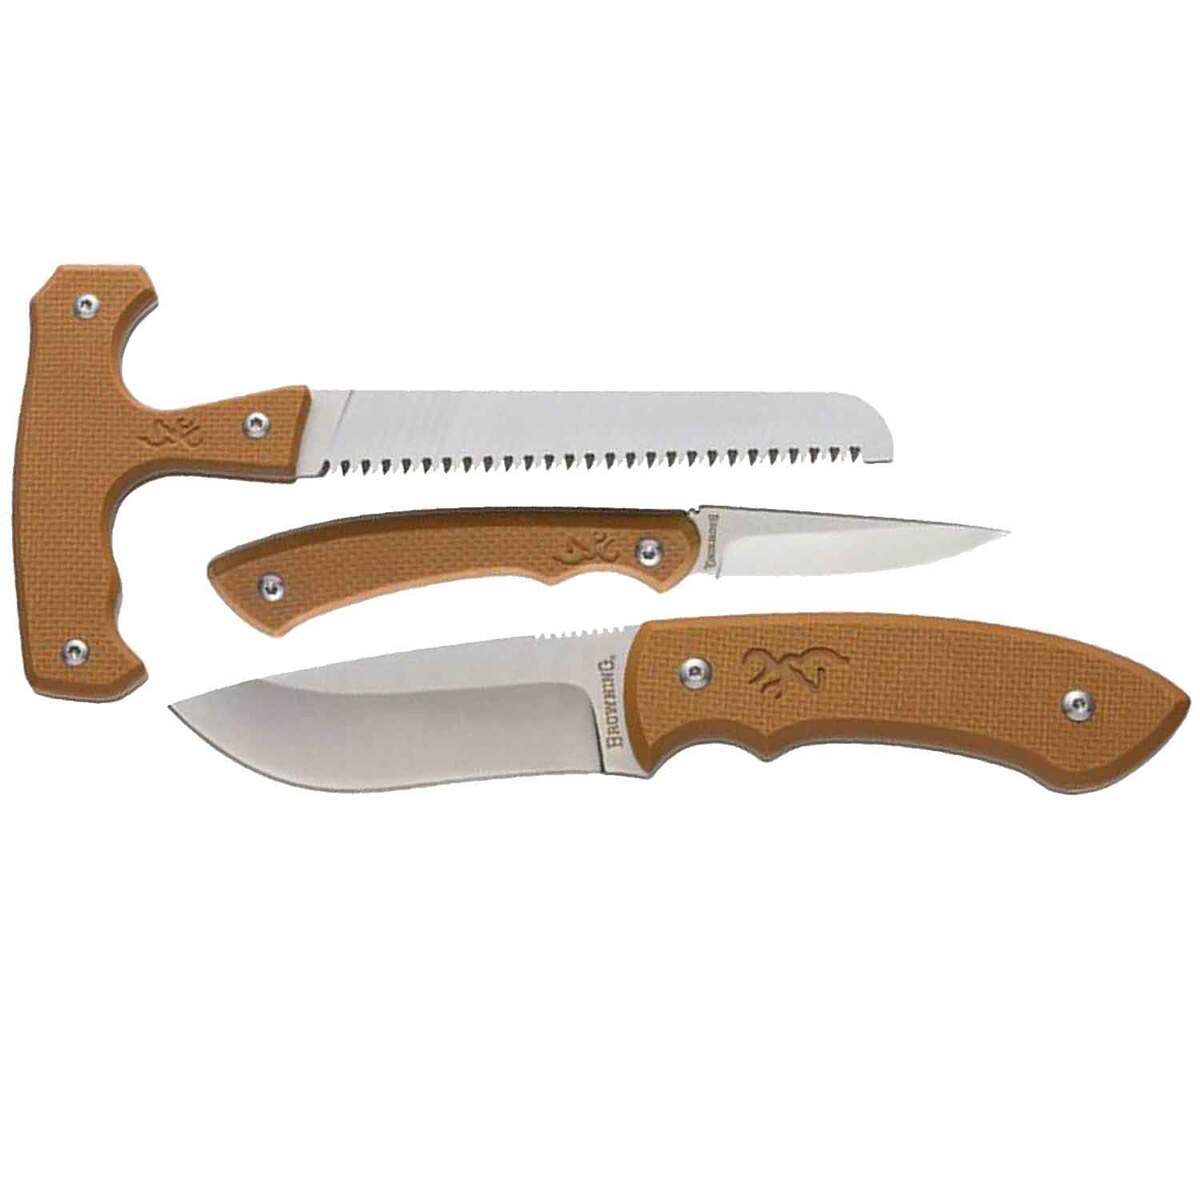 https://www.knives.com/medias/browning-three-piece-saw-and-knife-set-brown-1627950-1.jpg?context=bWFzdGVyfGltYWdlc3w0NTY4OHxpbWFnZS9qcGVnfGg1MC9oNzYvMTA4MzEwMDM0NTE0MjIvMTYyNzk1MC0xX2Jhc2UtY29udmVyc2lvbkZvcm1hdF8xMjAwLWNvbnZlcnNpb25Gb3JtYXR8Y2JlZTkzNTNlOWRlMmJjMTg4MzBhNWJkNzU5NTE2ZjZmOTI2MDk4ZTM3MjA1ZWM4NjhlMDkzNjk1NTMyZGM2NA